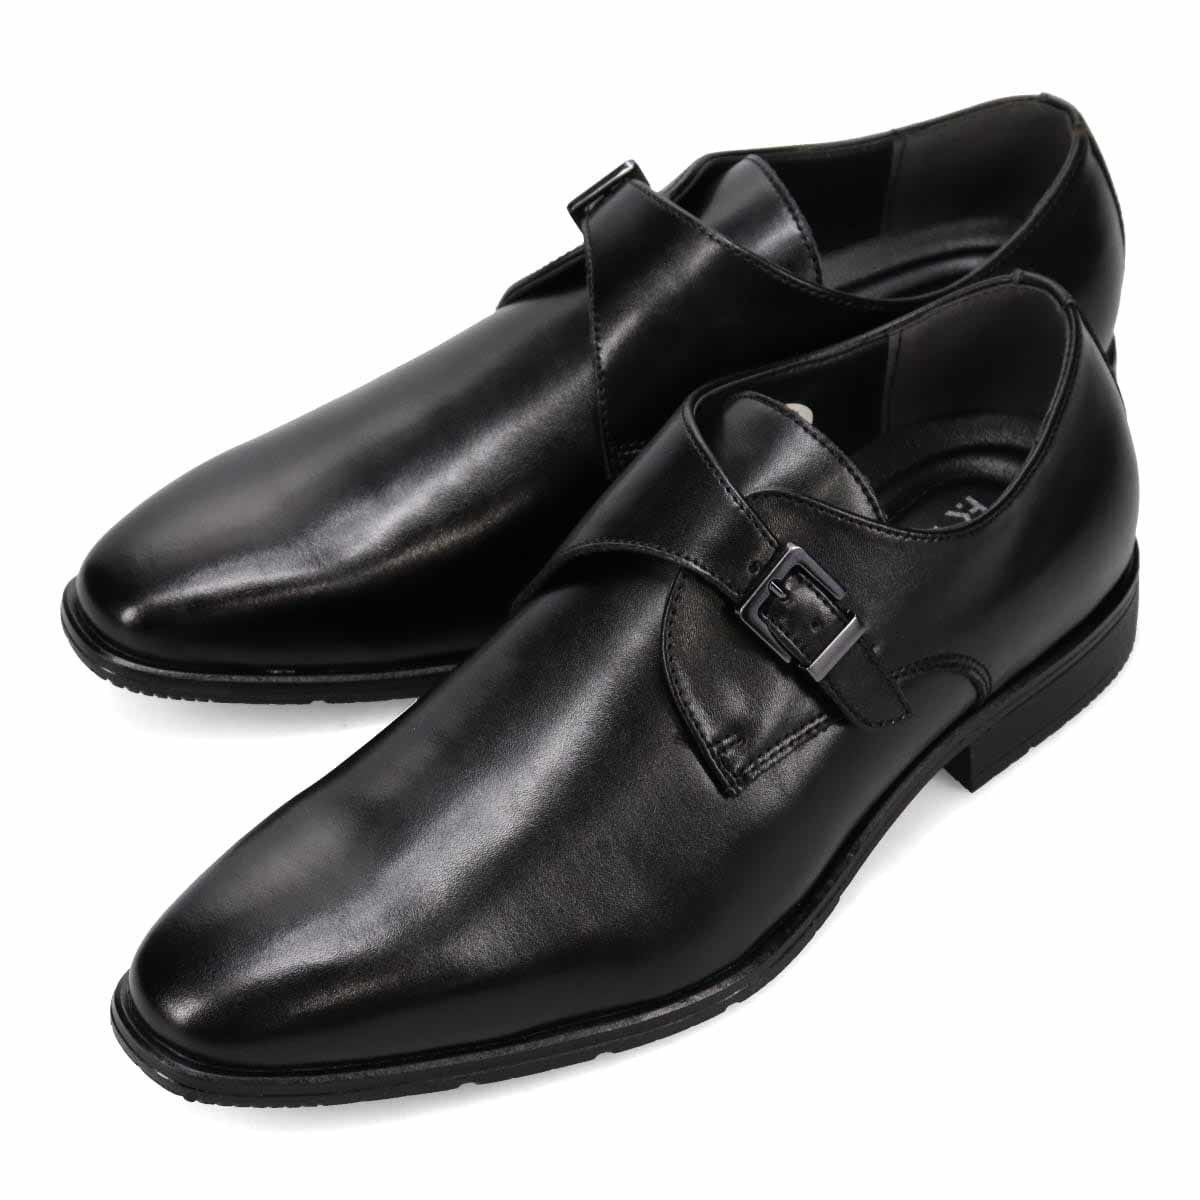 ▲ヒロコ コシノ モンクストラップビジネスシューズ HR7003 本革 メンズ 紳士靴 革靴 ブラック Black 黒 25.5cm (0910010694-bk-s255)